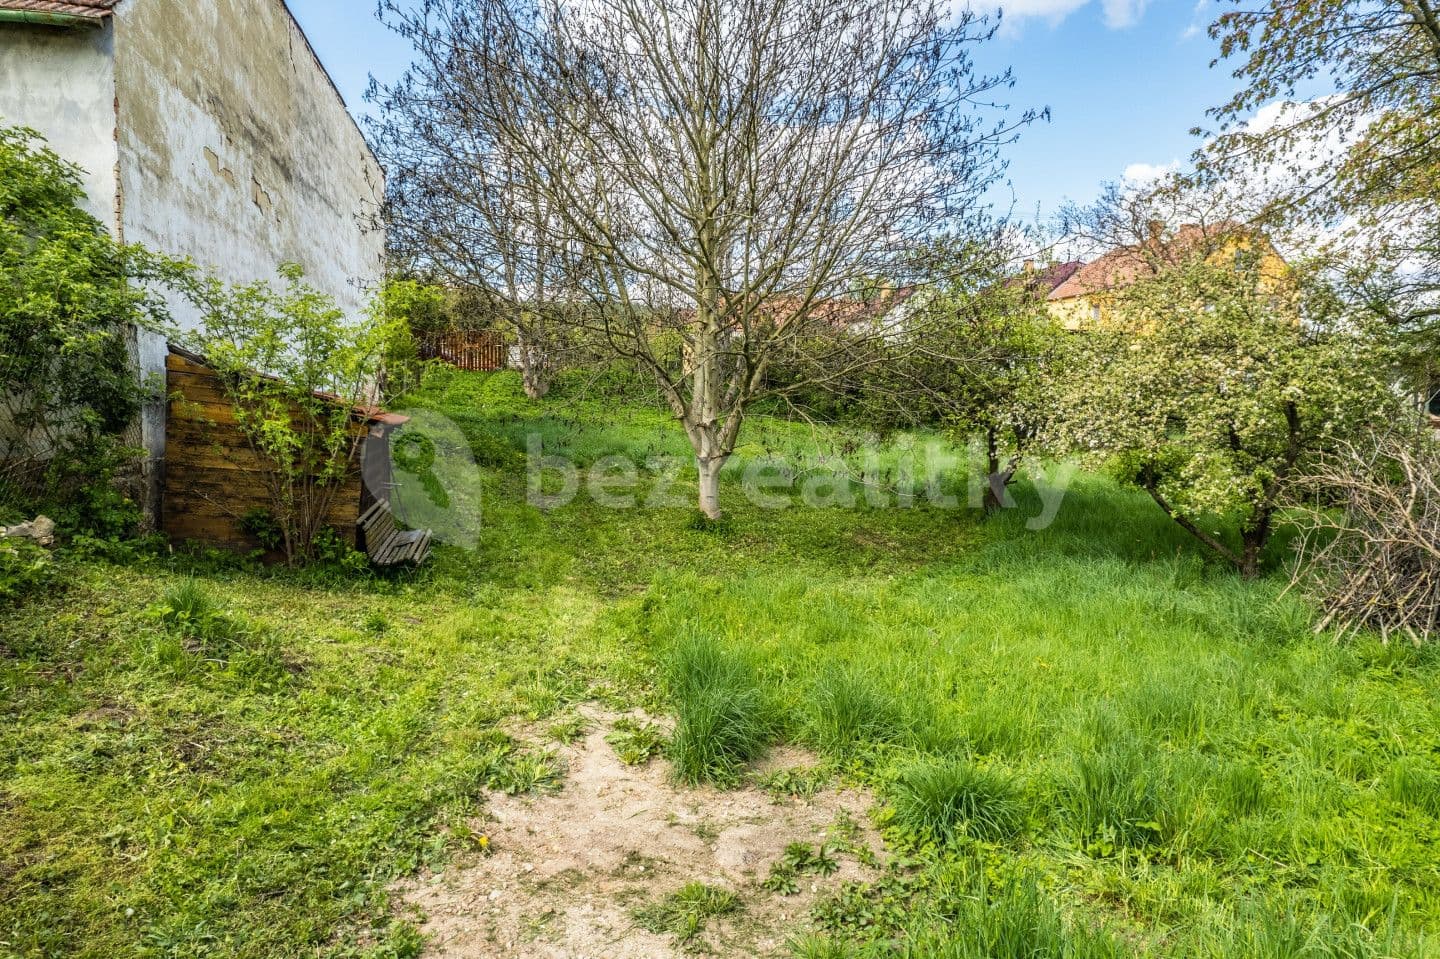 plot for sale, 1,096 m², Vanovice, Jihomoravský Region